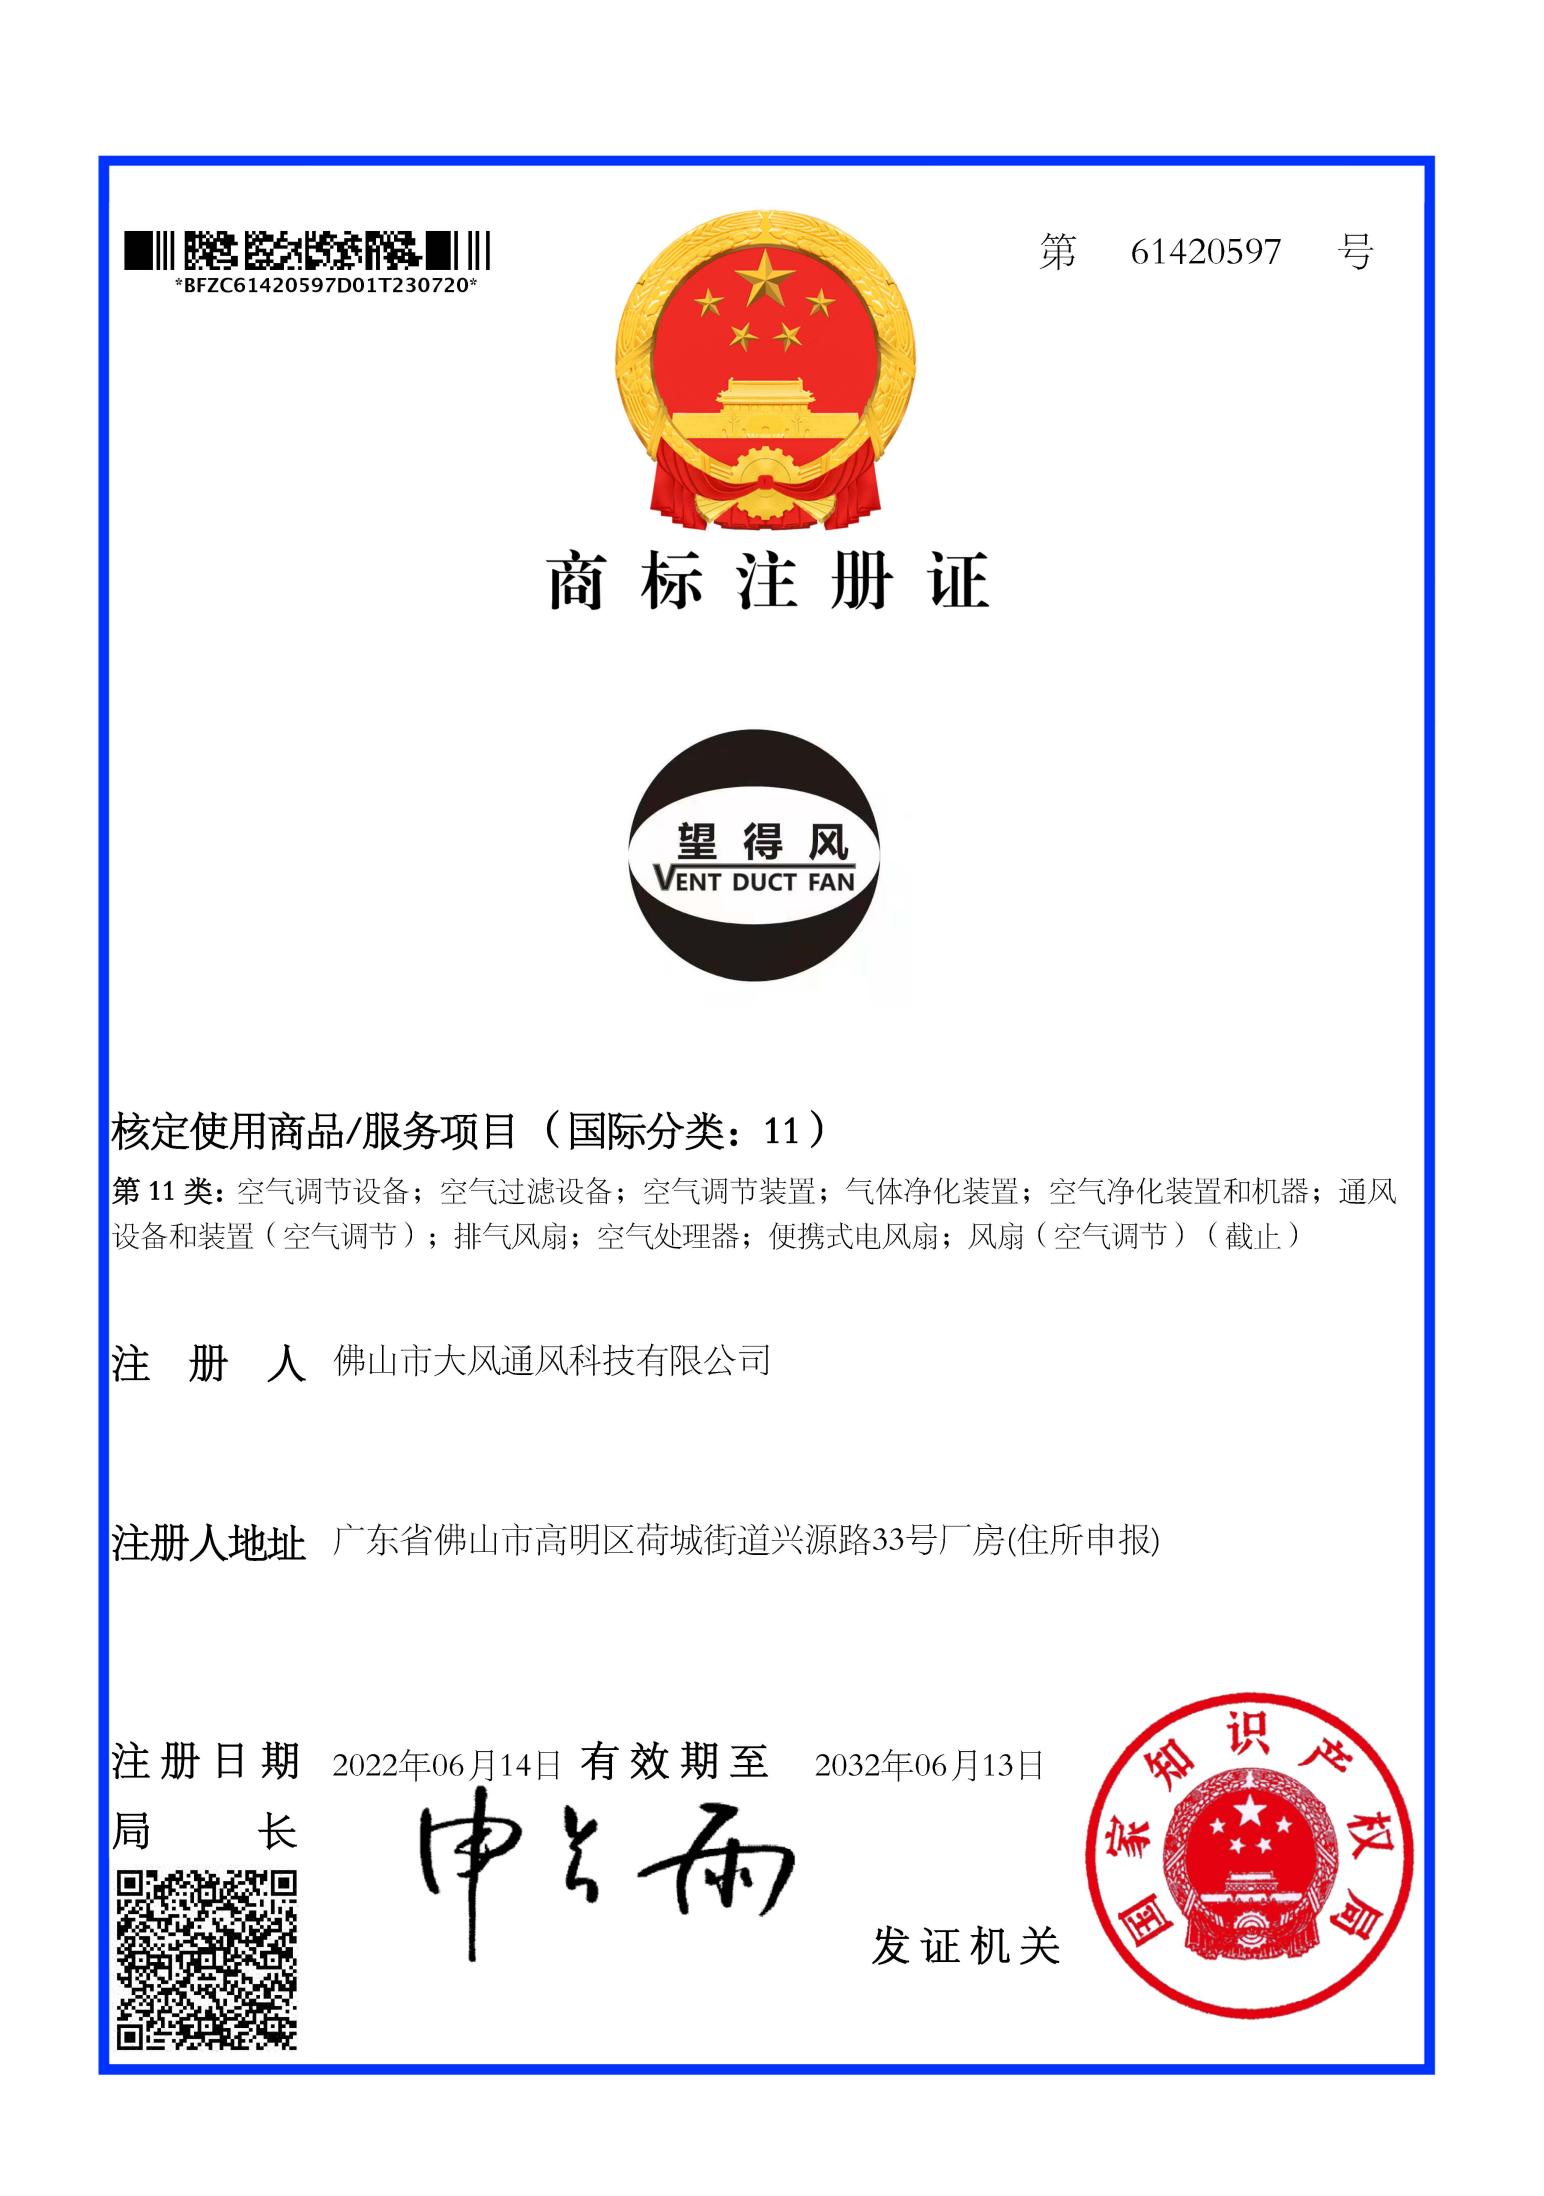 Trademark certificate 03